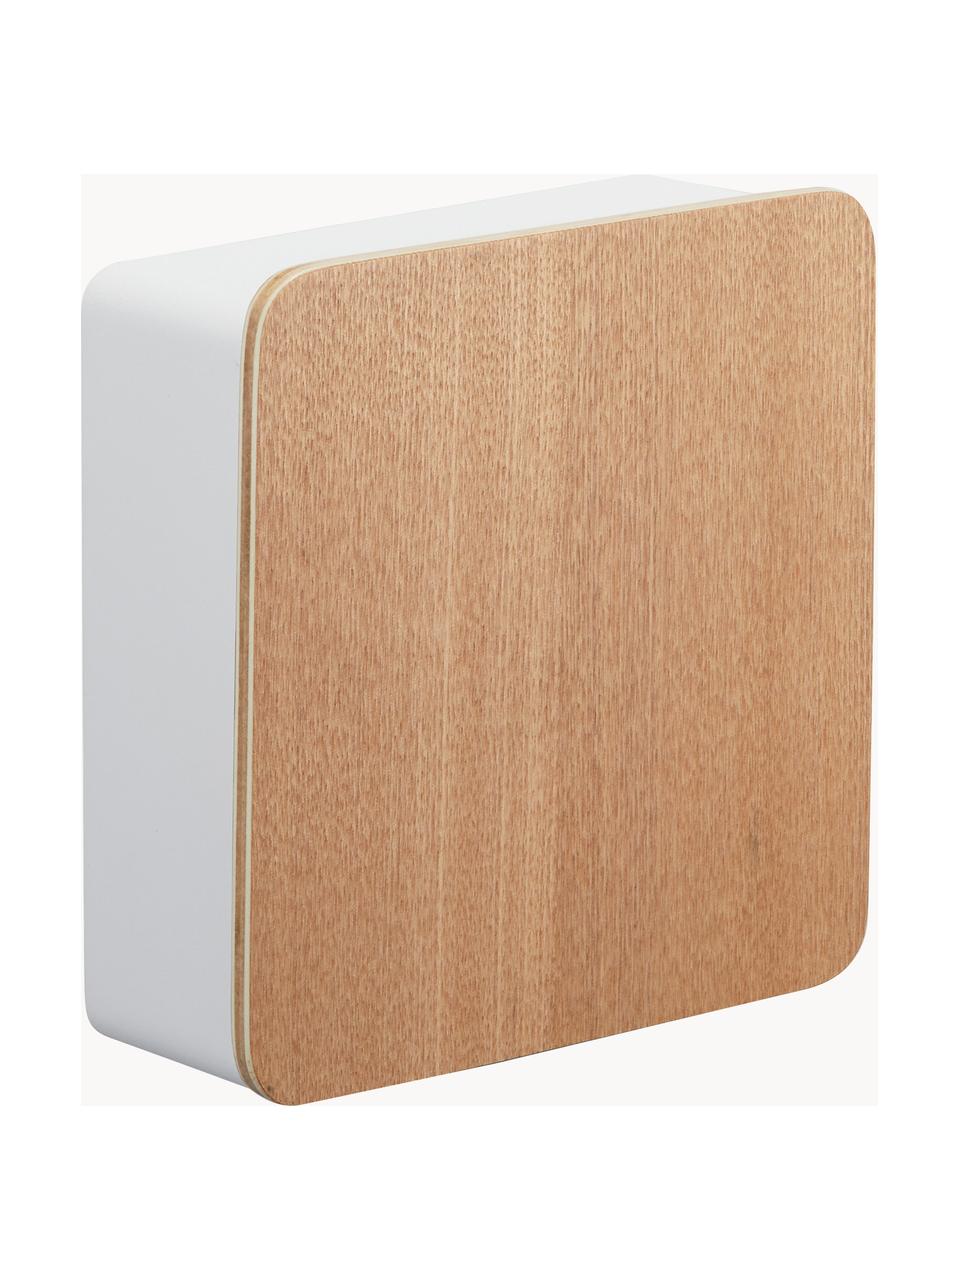 Boîte à clés avec dos magnétique Rin, Blanc, bois clair, larg. 16 x prof. 16 cm